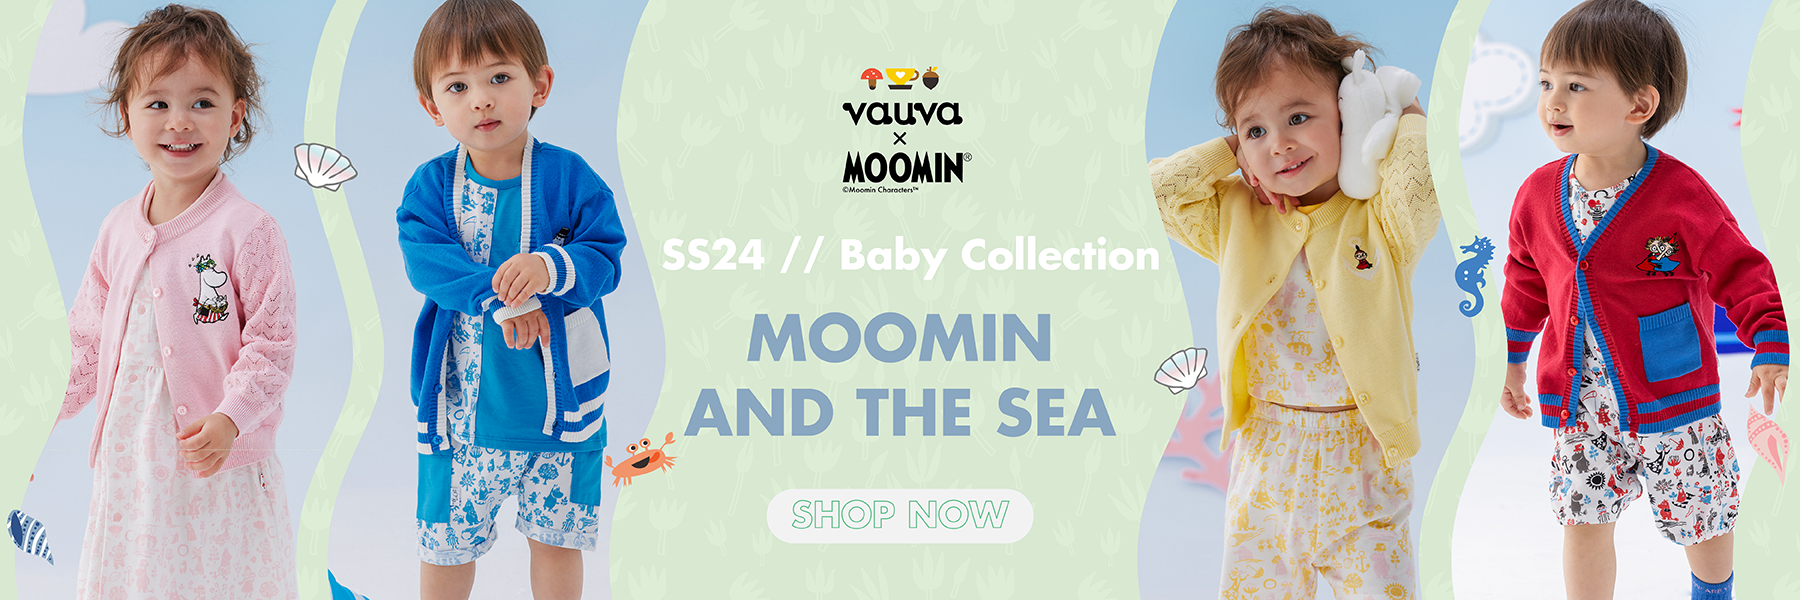 My Little Korner - Vauva x Moomin SS24 New Arrival banner